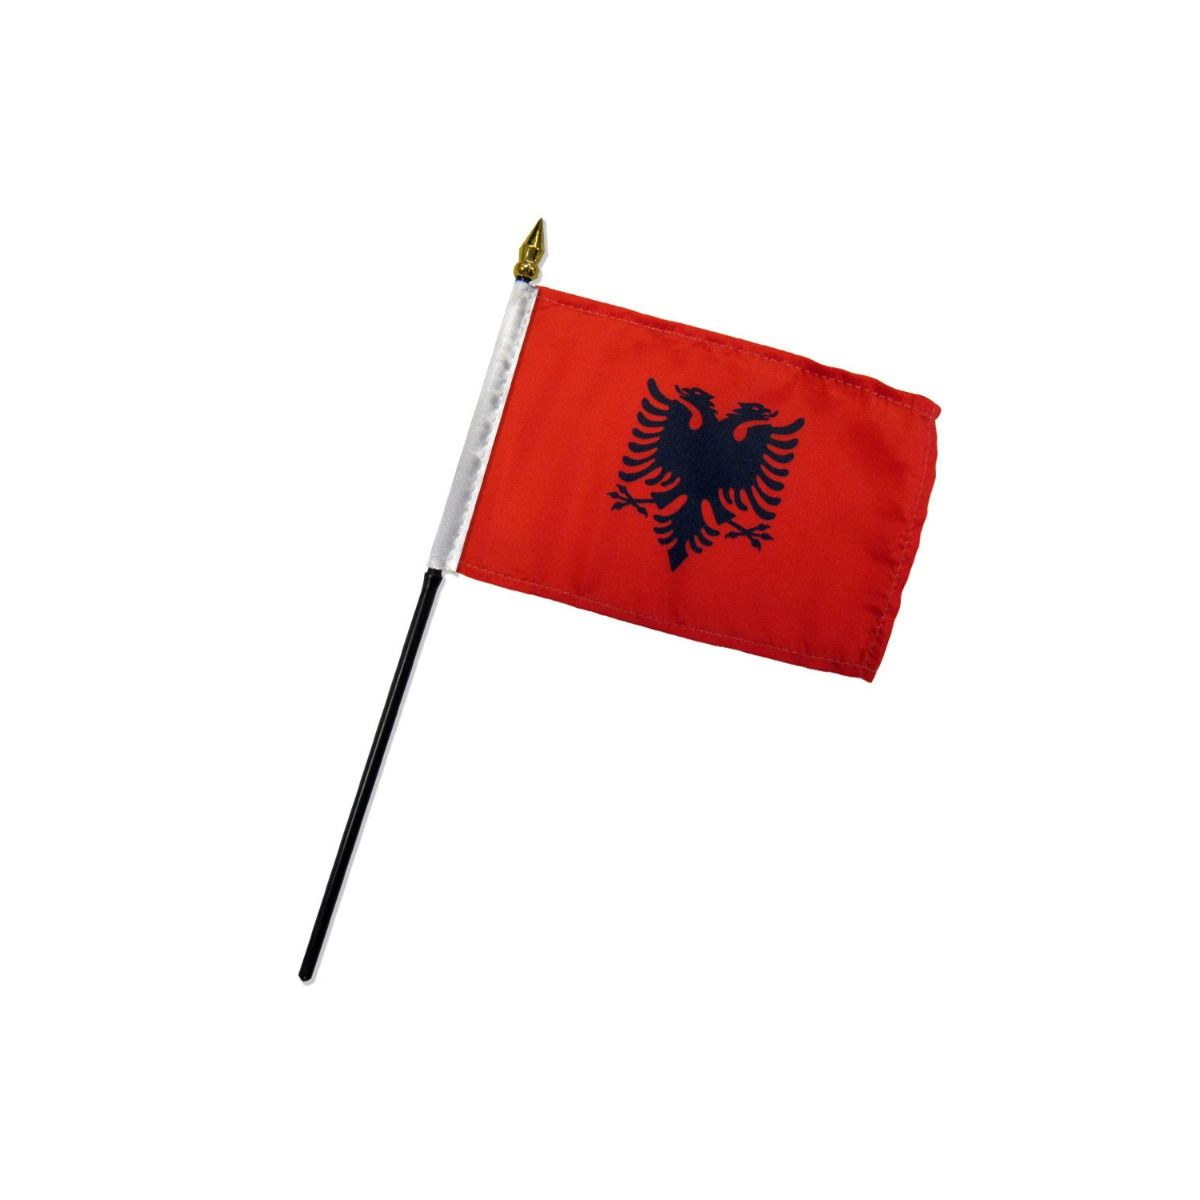 Albania Flag Unique Design, 3x5 Ft / 90x150 cm, EU Made